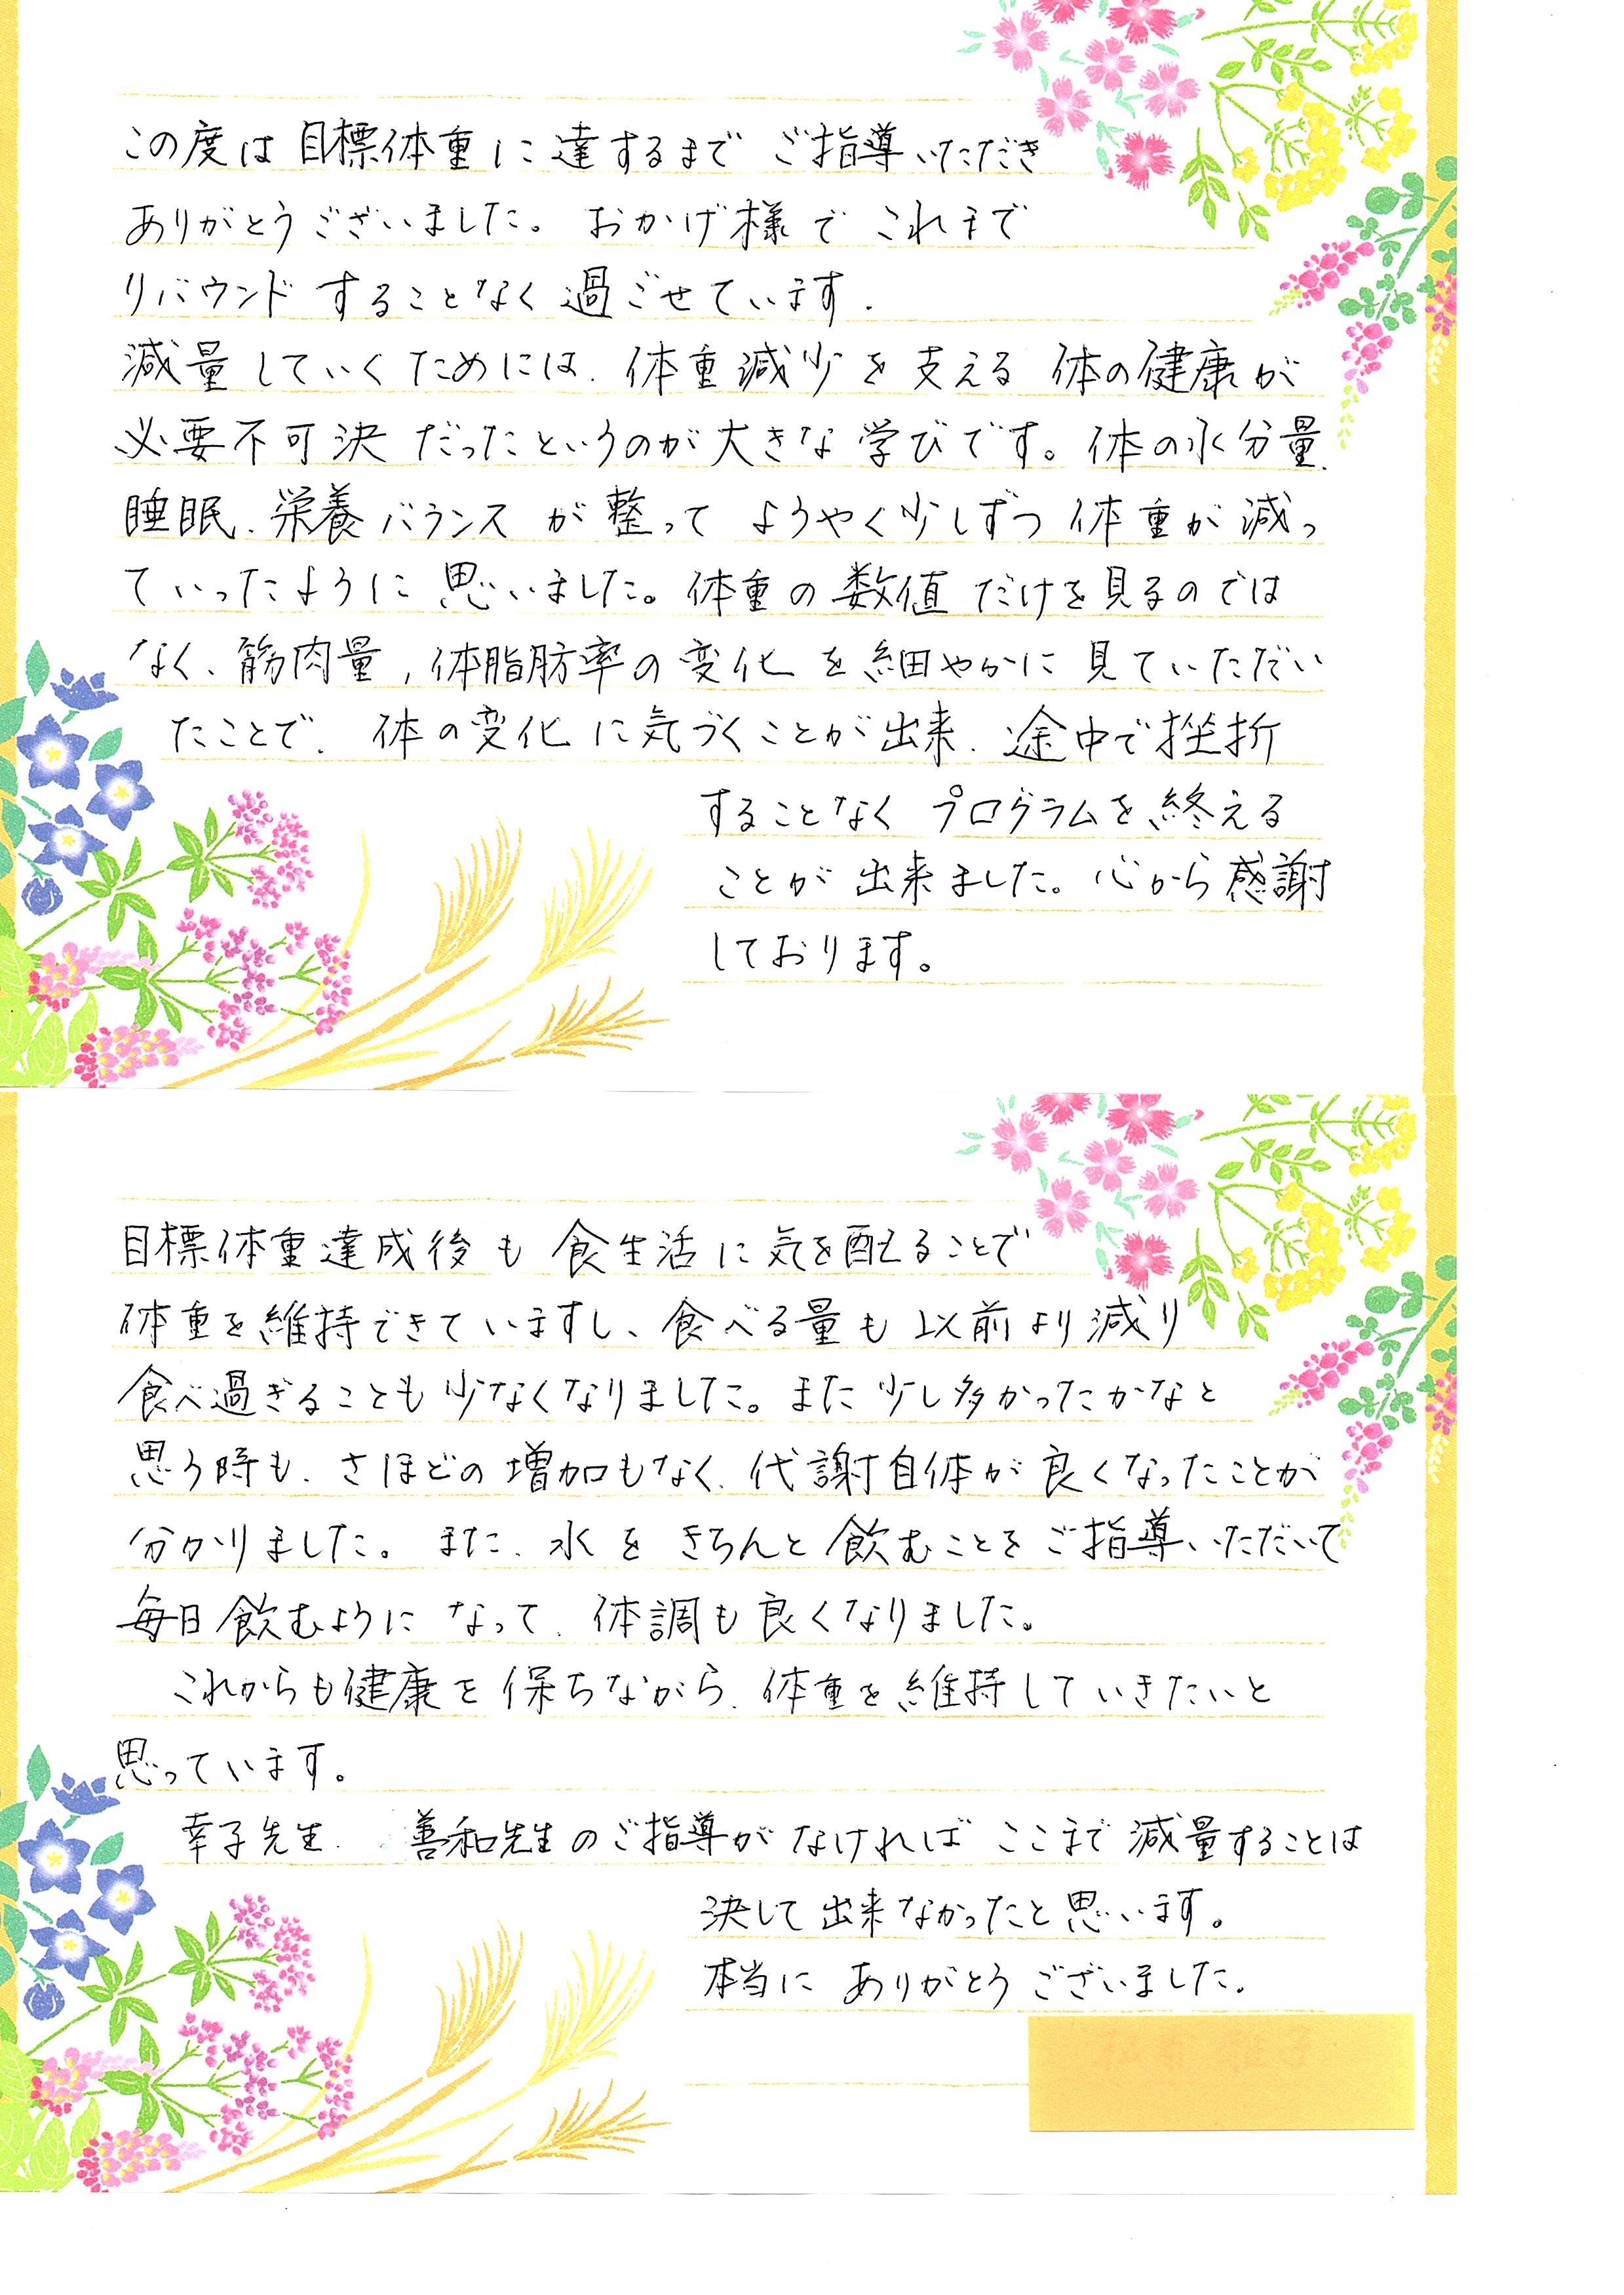 松浦雅子さん手紙